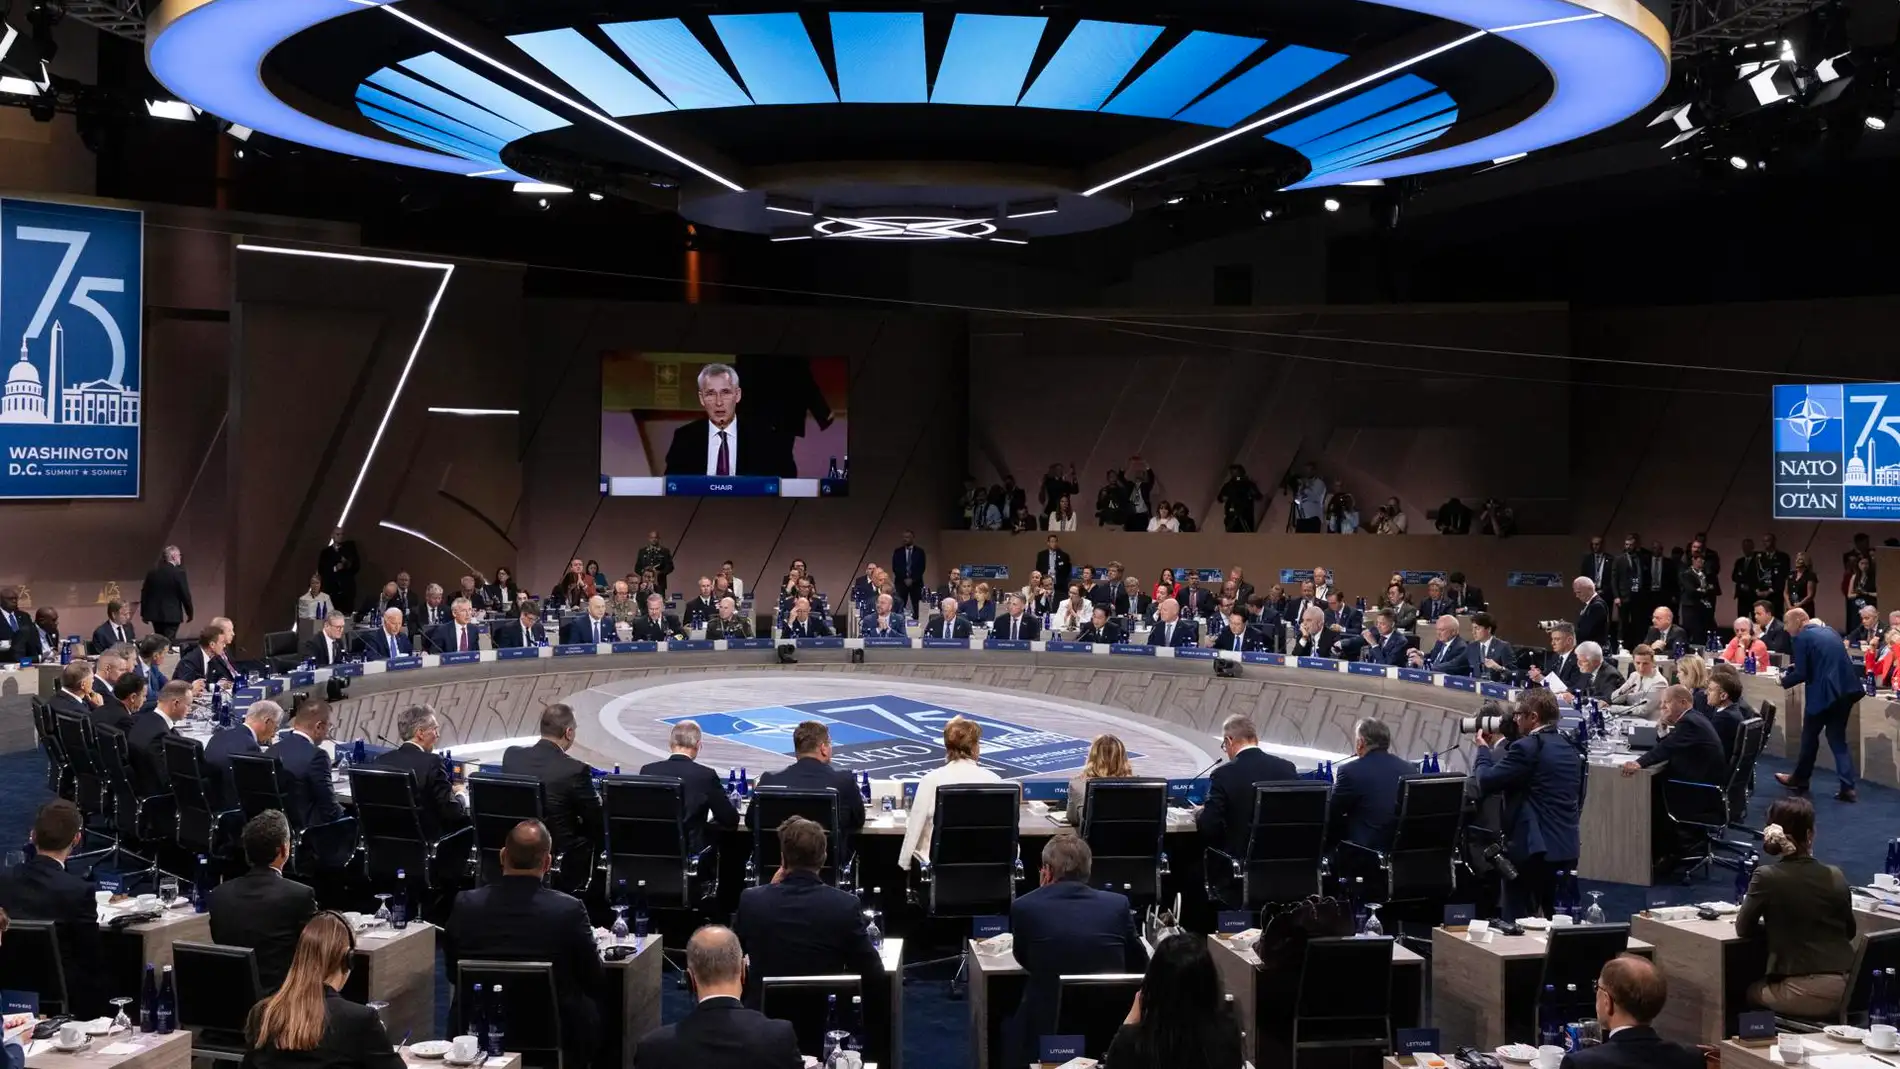 Vista general de la sala mientras el secretario general de la OTAN, Jens Stoltenberg, habla en la reunión.